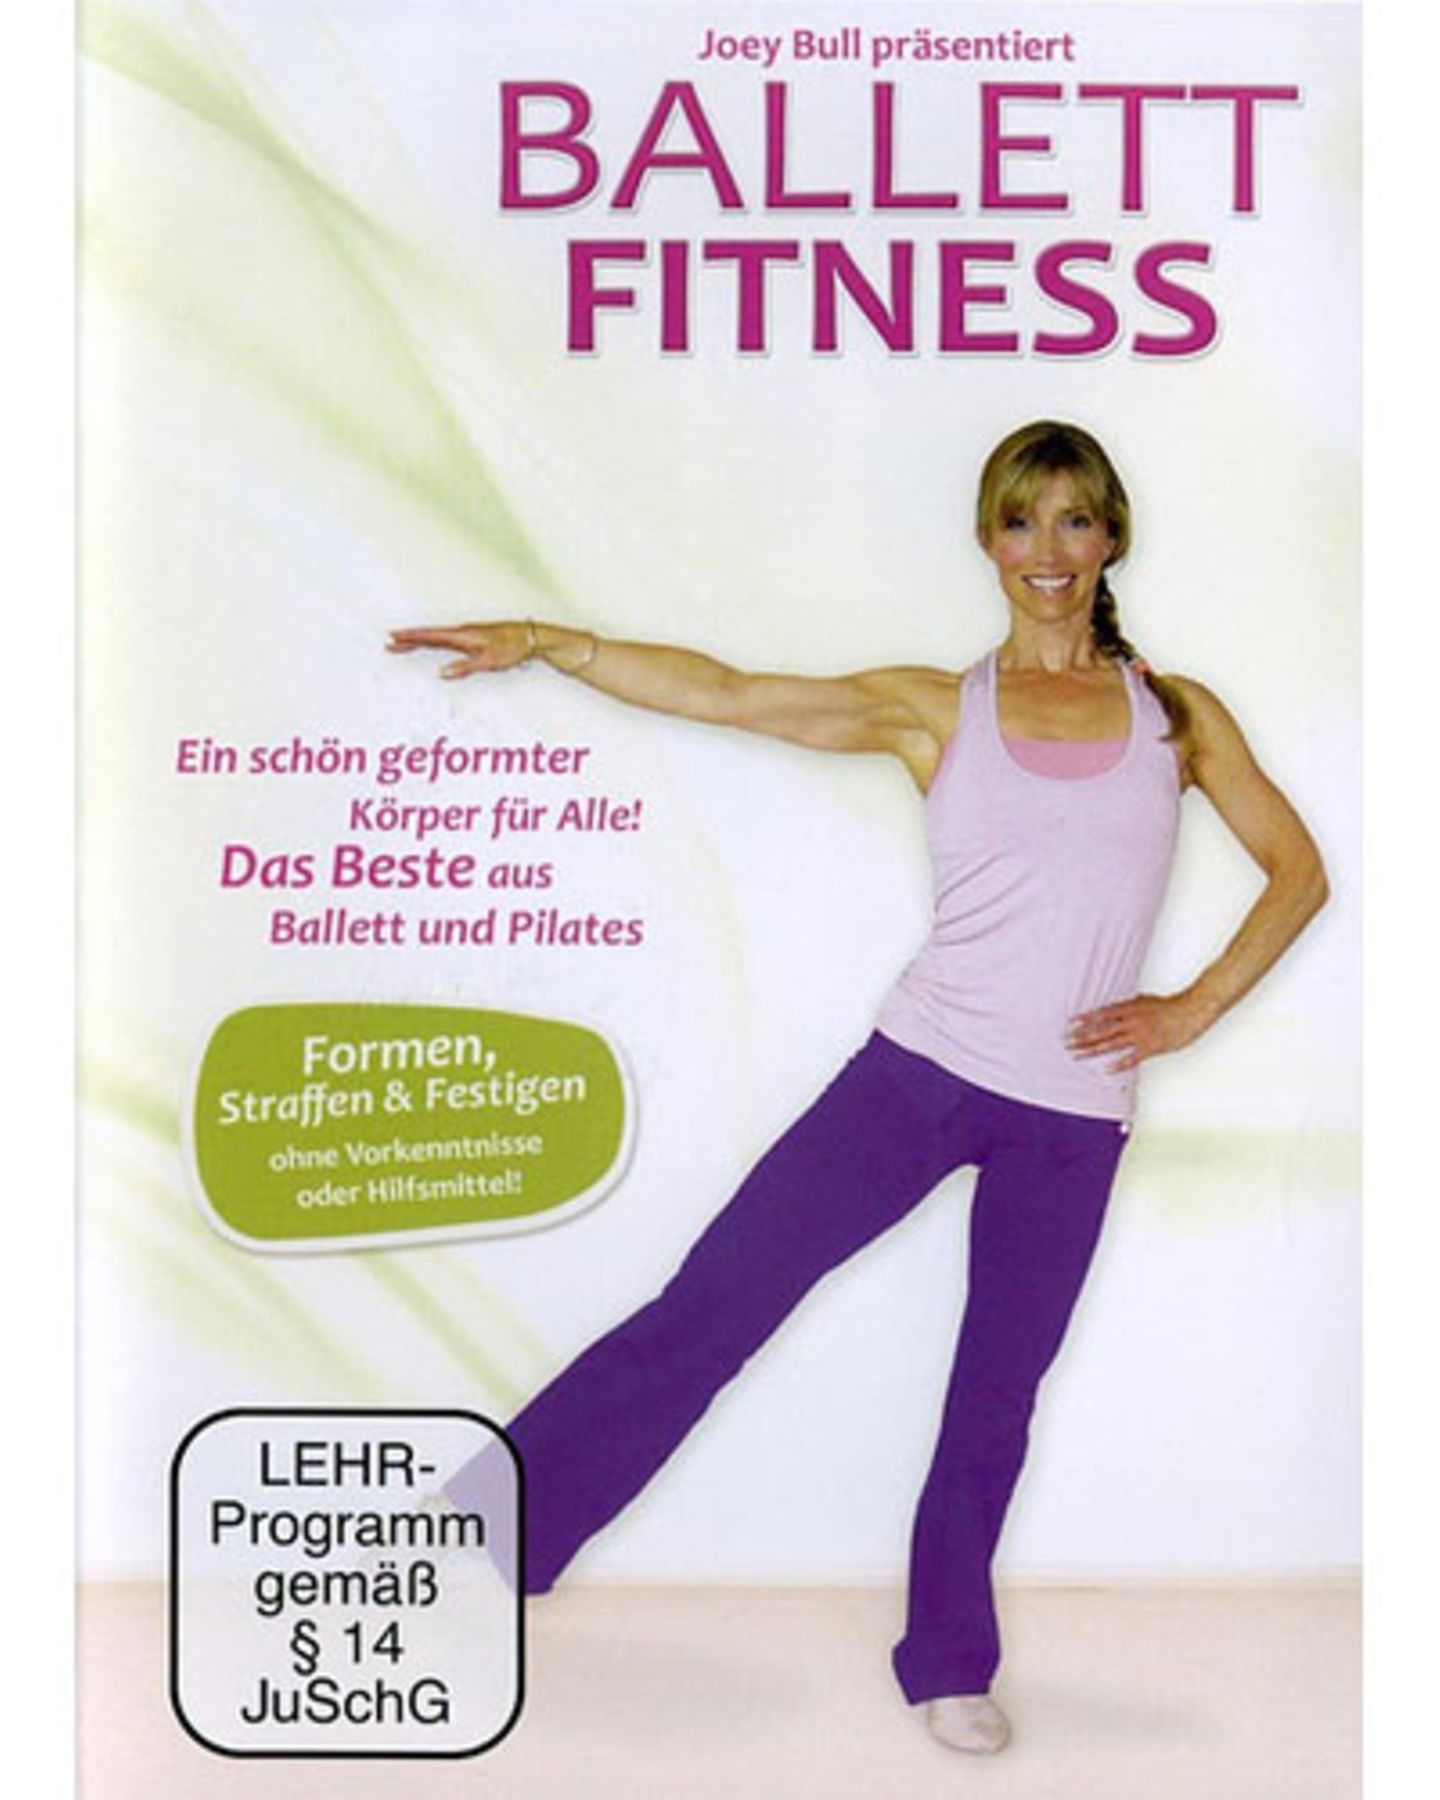 Workout Die besten FitnessDVDs für zu Hause BRIGITTE.de